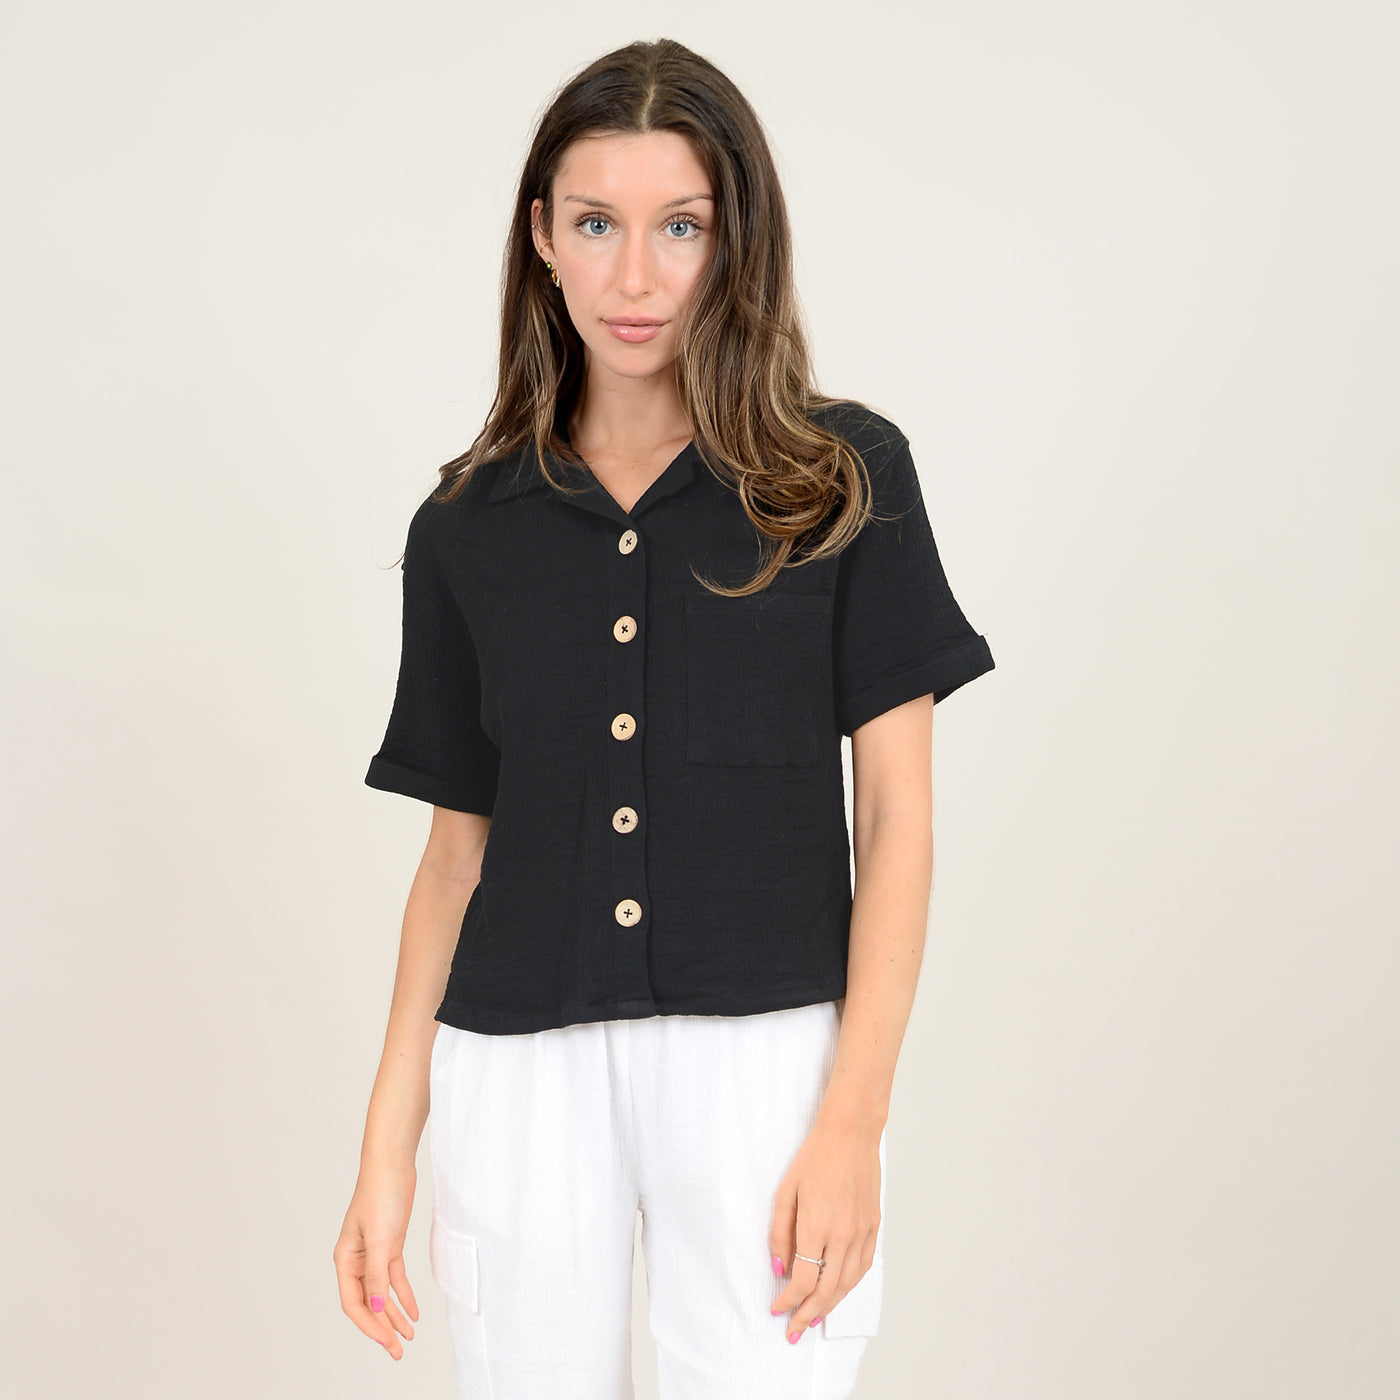 Anastasia Bubble Gauze Short Sleeve Shirt, Black